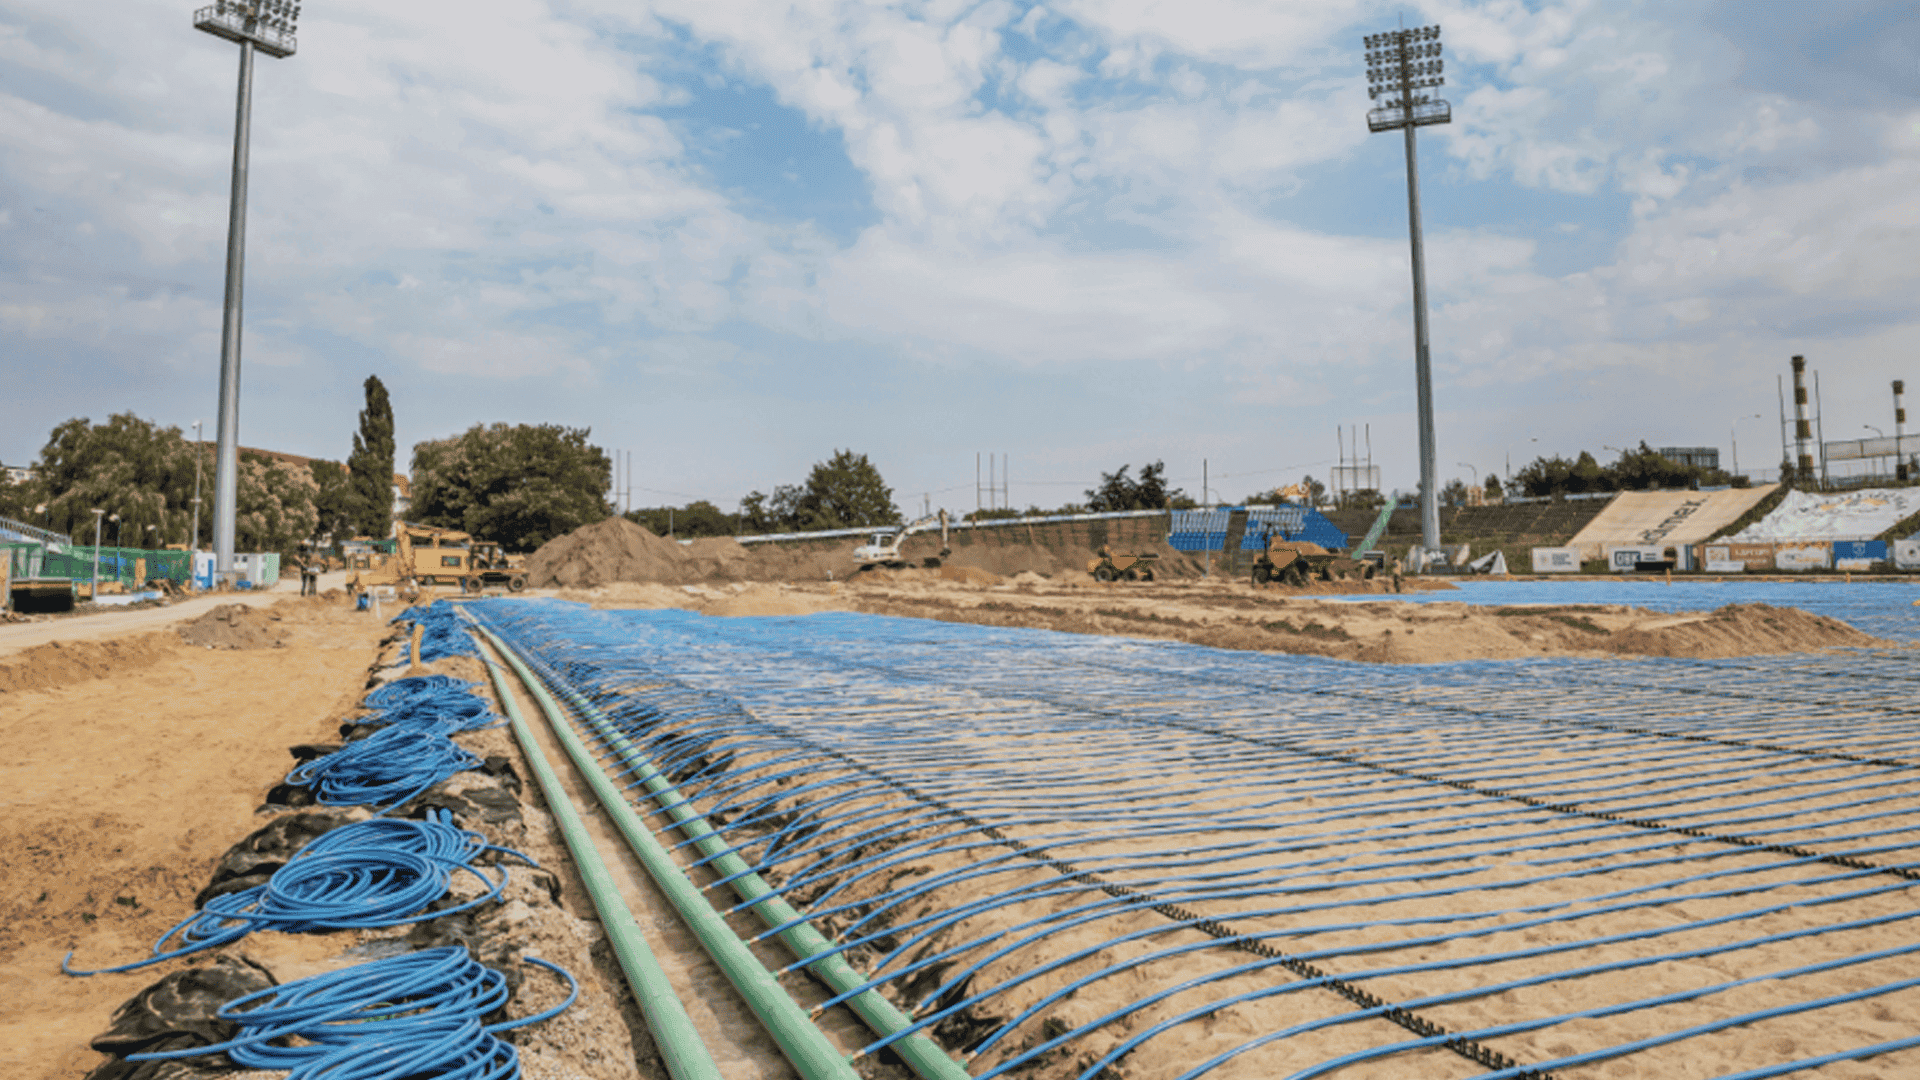 KAN-therm - Systém Football - Použití systému plošného vyhřívání na fotbalovém hřišti